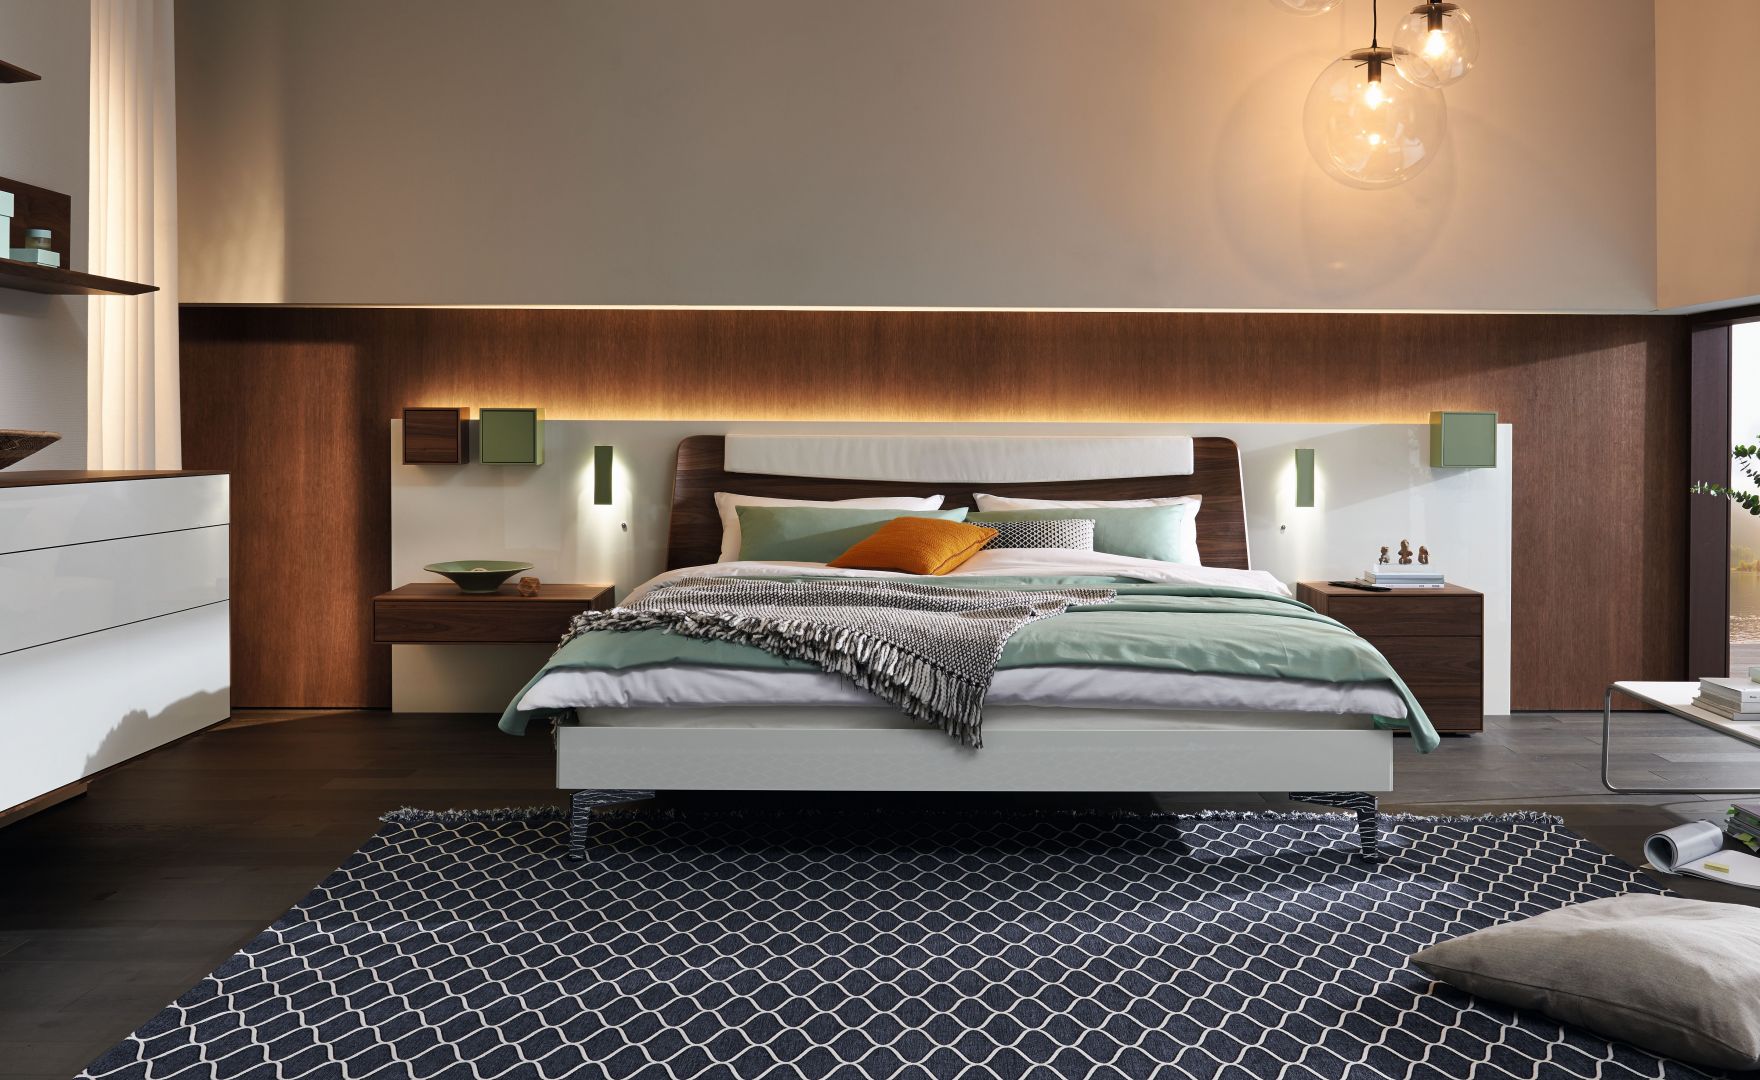 Łóżko firmy Hülsta połączone z panelem ściennym zawierającym półki, stoliki nocne i oświetlenie. Fot. Hülsta